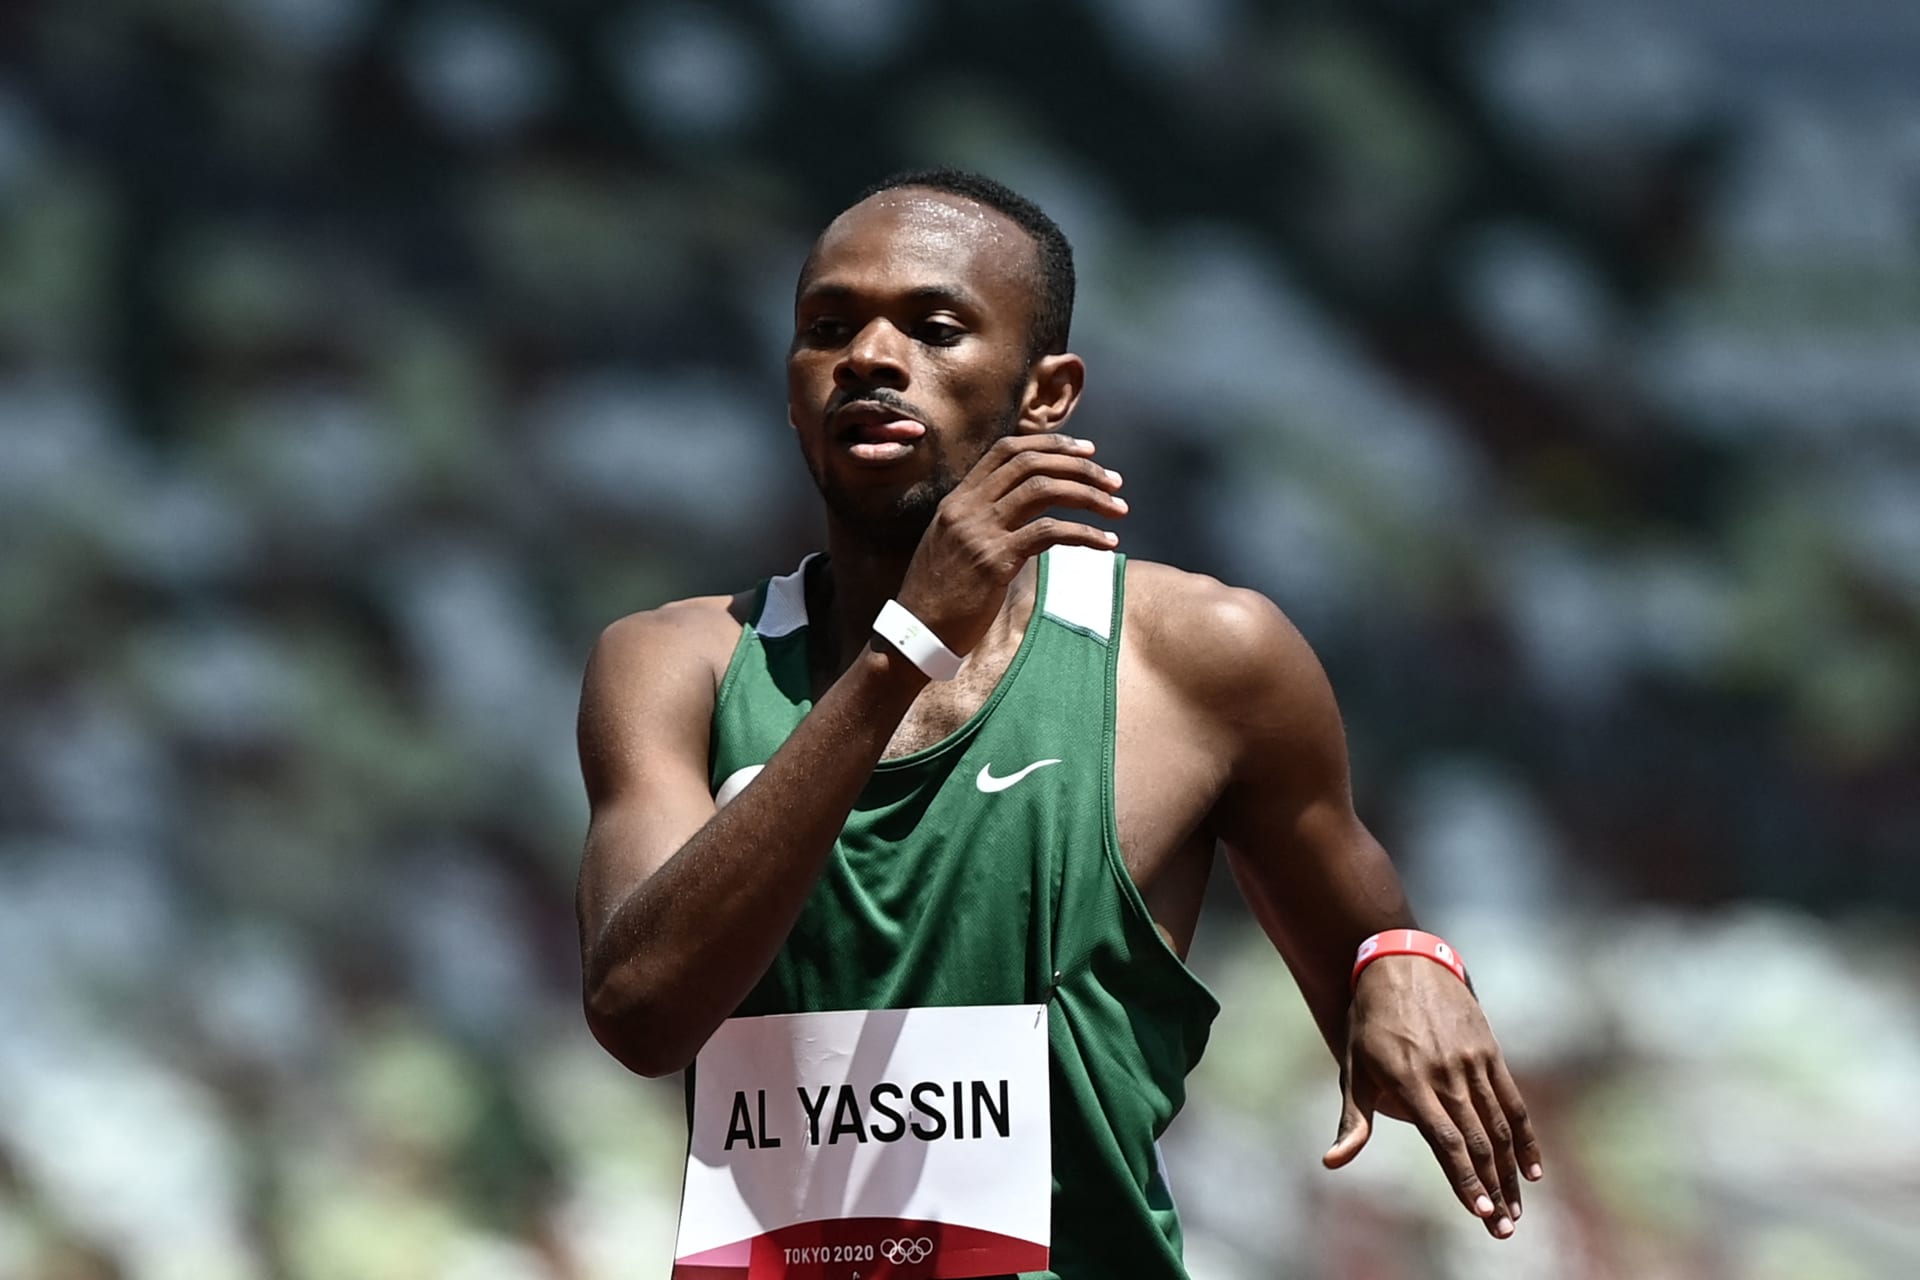 السعودية.. ردود فعل واسعة على تأهل العداء مازن الياسين لنصف نهائي 400 متر